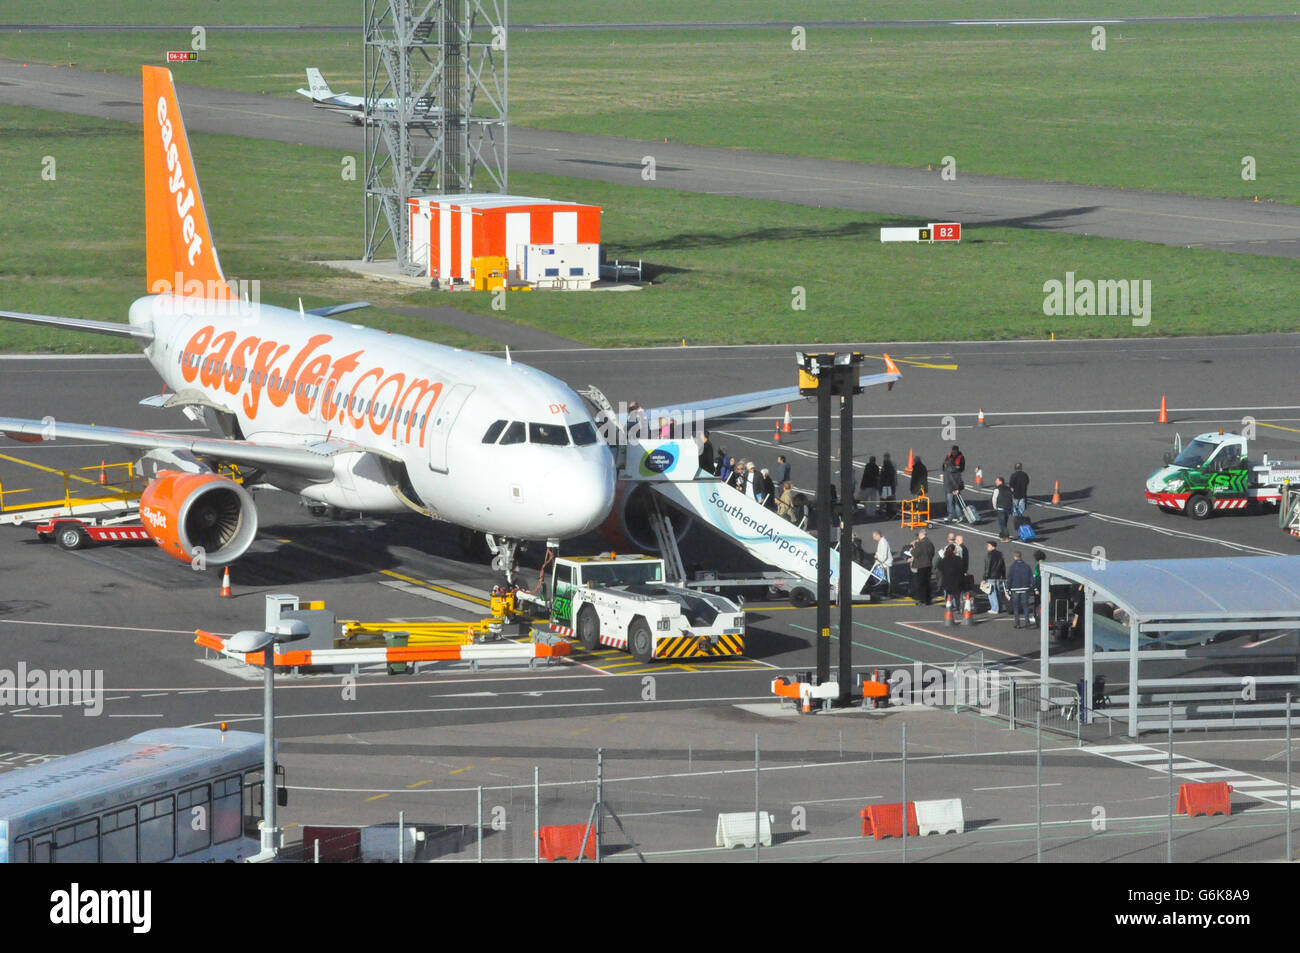 Passagiere, die ein easyJet-Flugzeug auf der Asphaltbahn am Flughafen Southend besteigen. Stockfoto